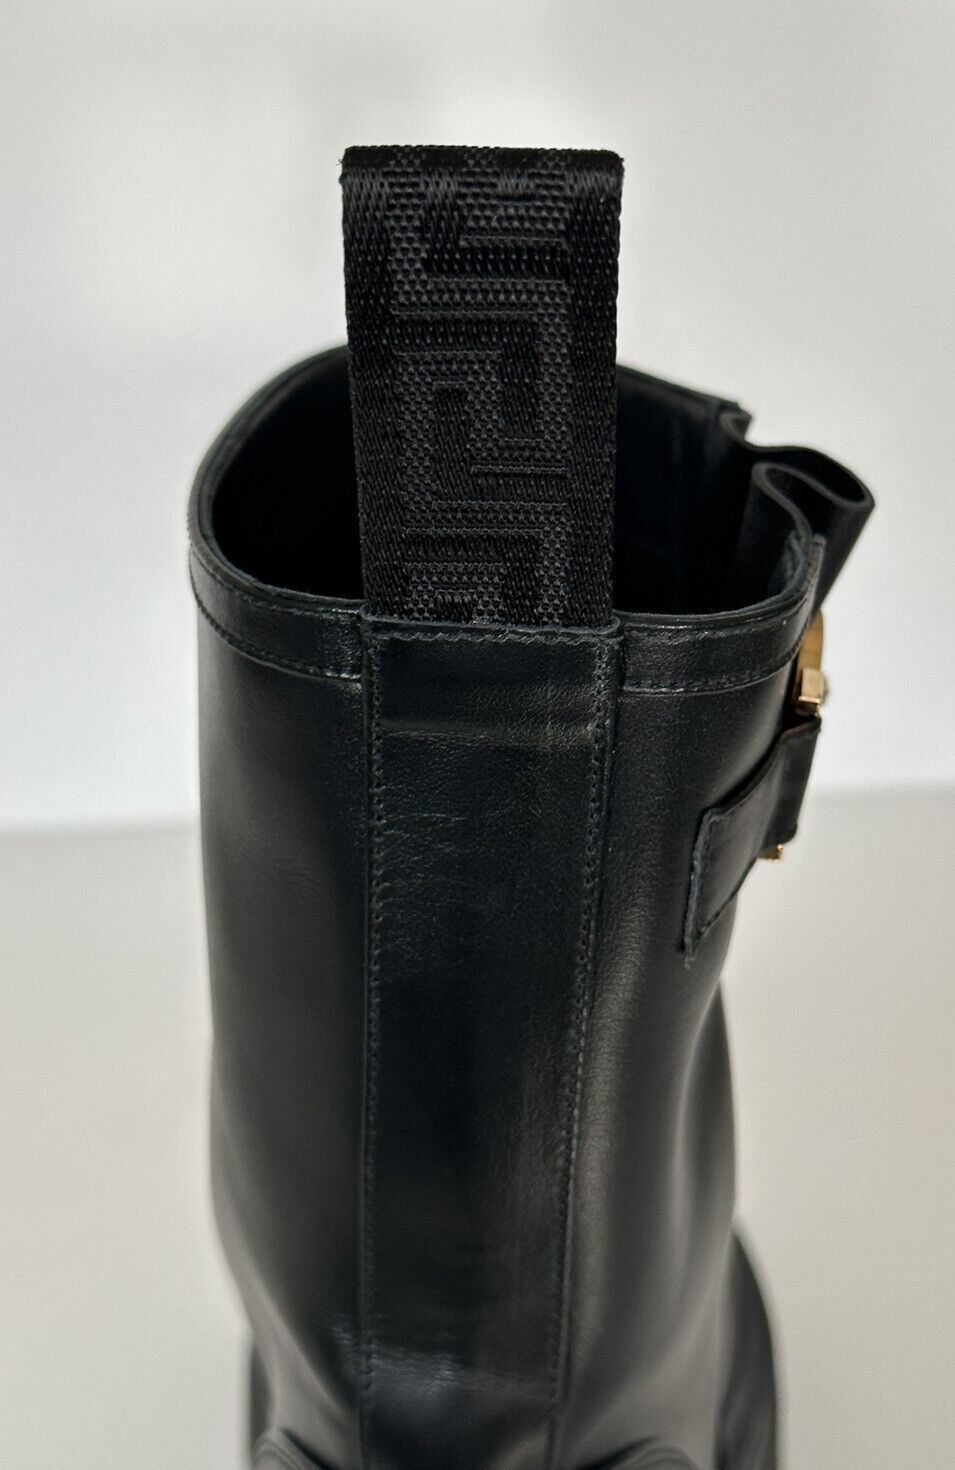 Черные кожаные ботильоны Versace за 1300 долларов США 9 США (39 евро) 1002863 Испания 